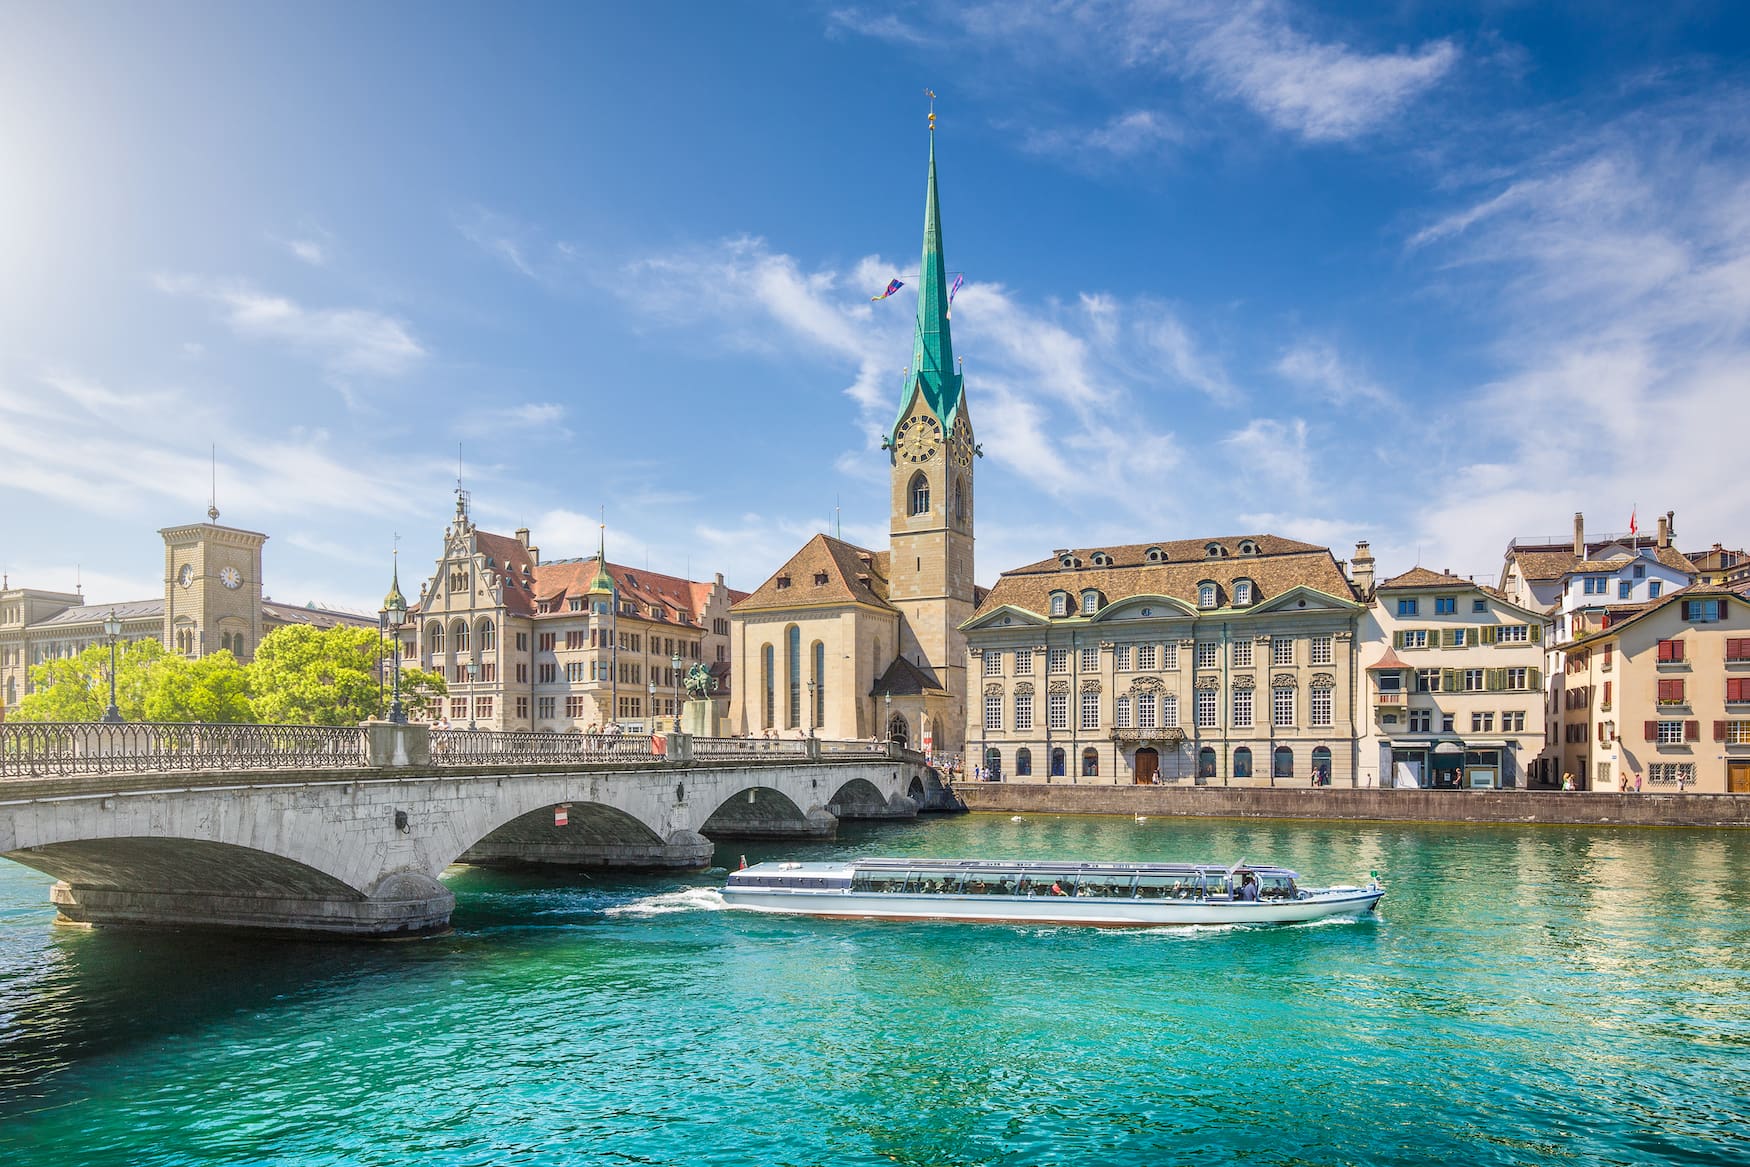 Schöne Aussicht auf das historische Stadtzentrum von Zürich mit der berühmten Fraumünsterkirche und Ausflugsboot auf der Limmat an einem sonnigen Tag mit blauem Himmel